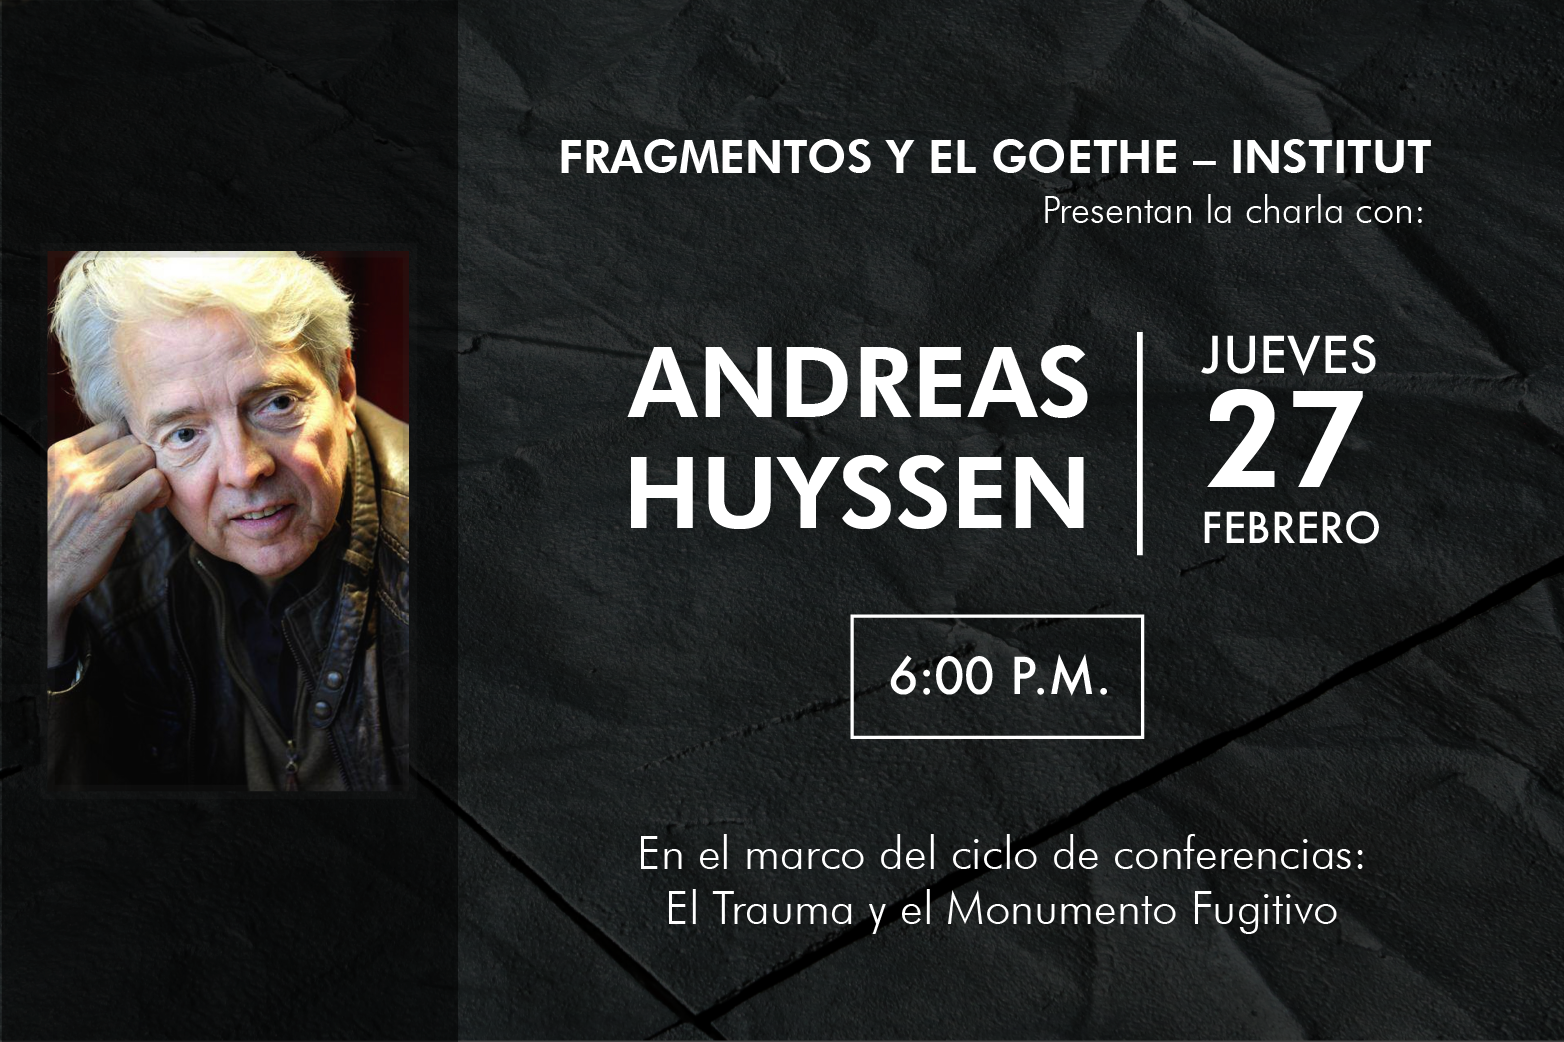 Fragmentos y el Goethe Institut presentan a Andreas Huyssen